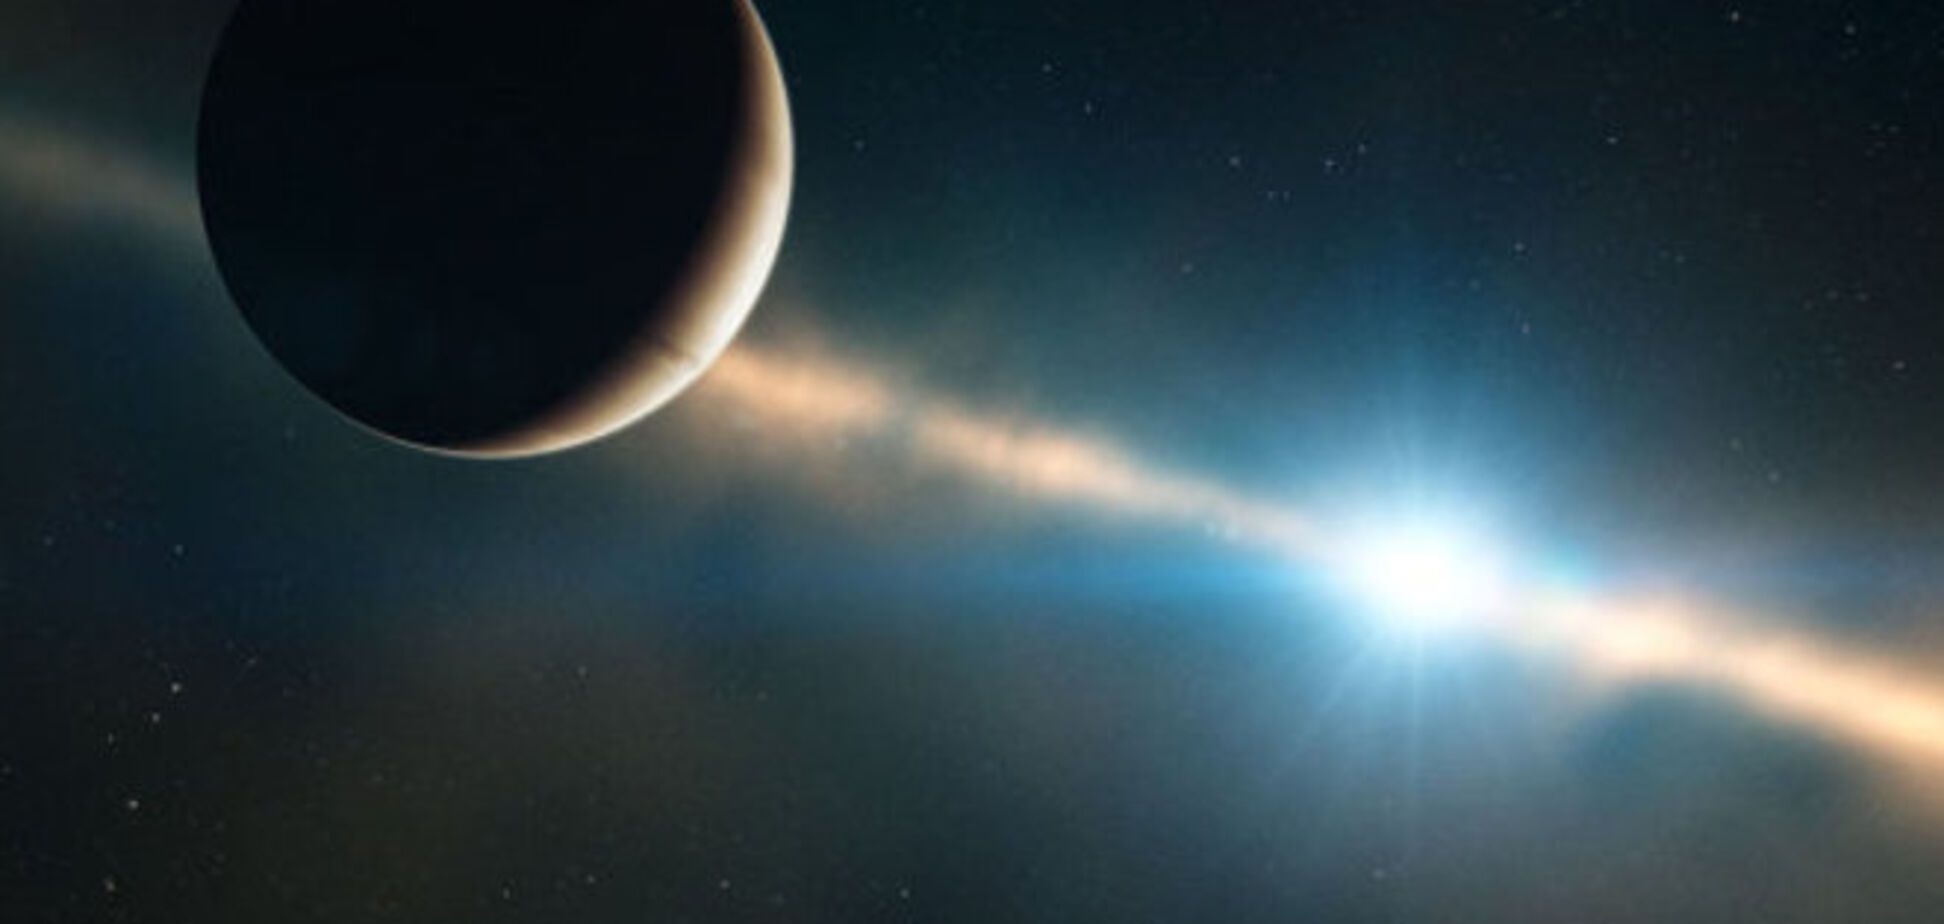 Ученые получили уникальные фото зарождения новой планеты